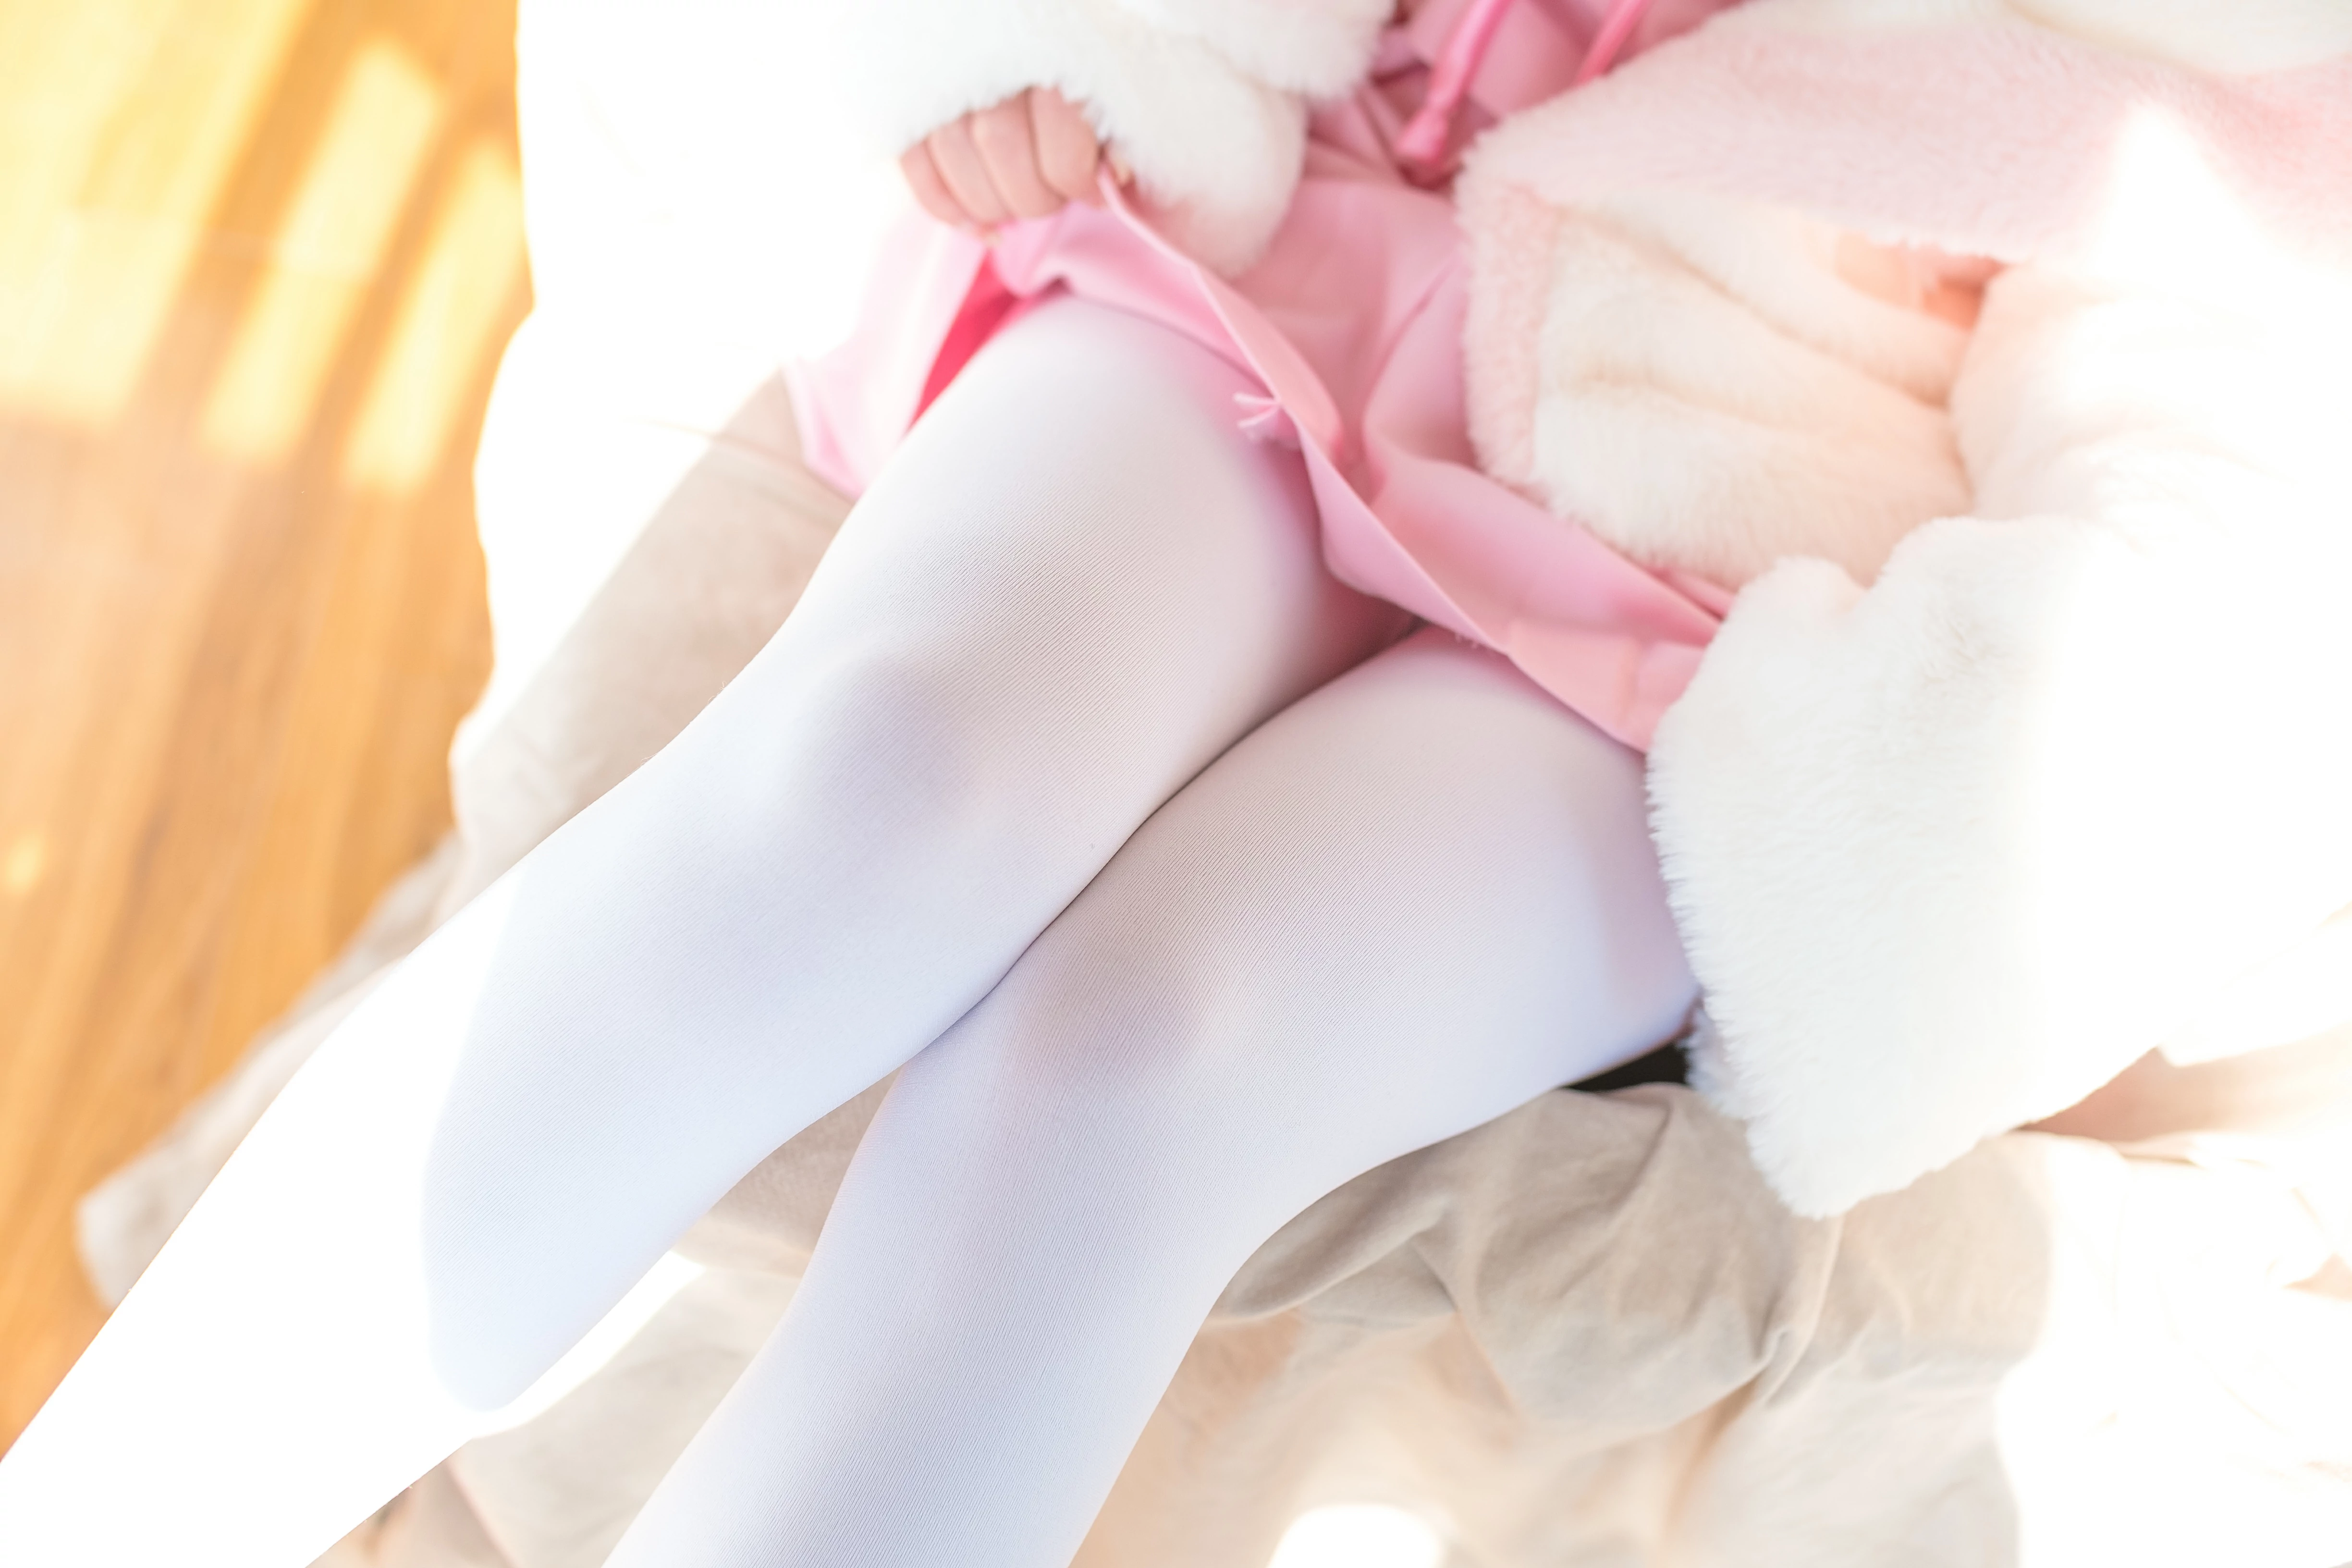 [森萝财团]BETA-013 清纯可爱小萝莉 粉色情趣高中女生制服与短裙加白色丝袜美腿玉足私房写真集,